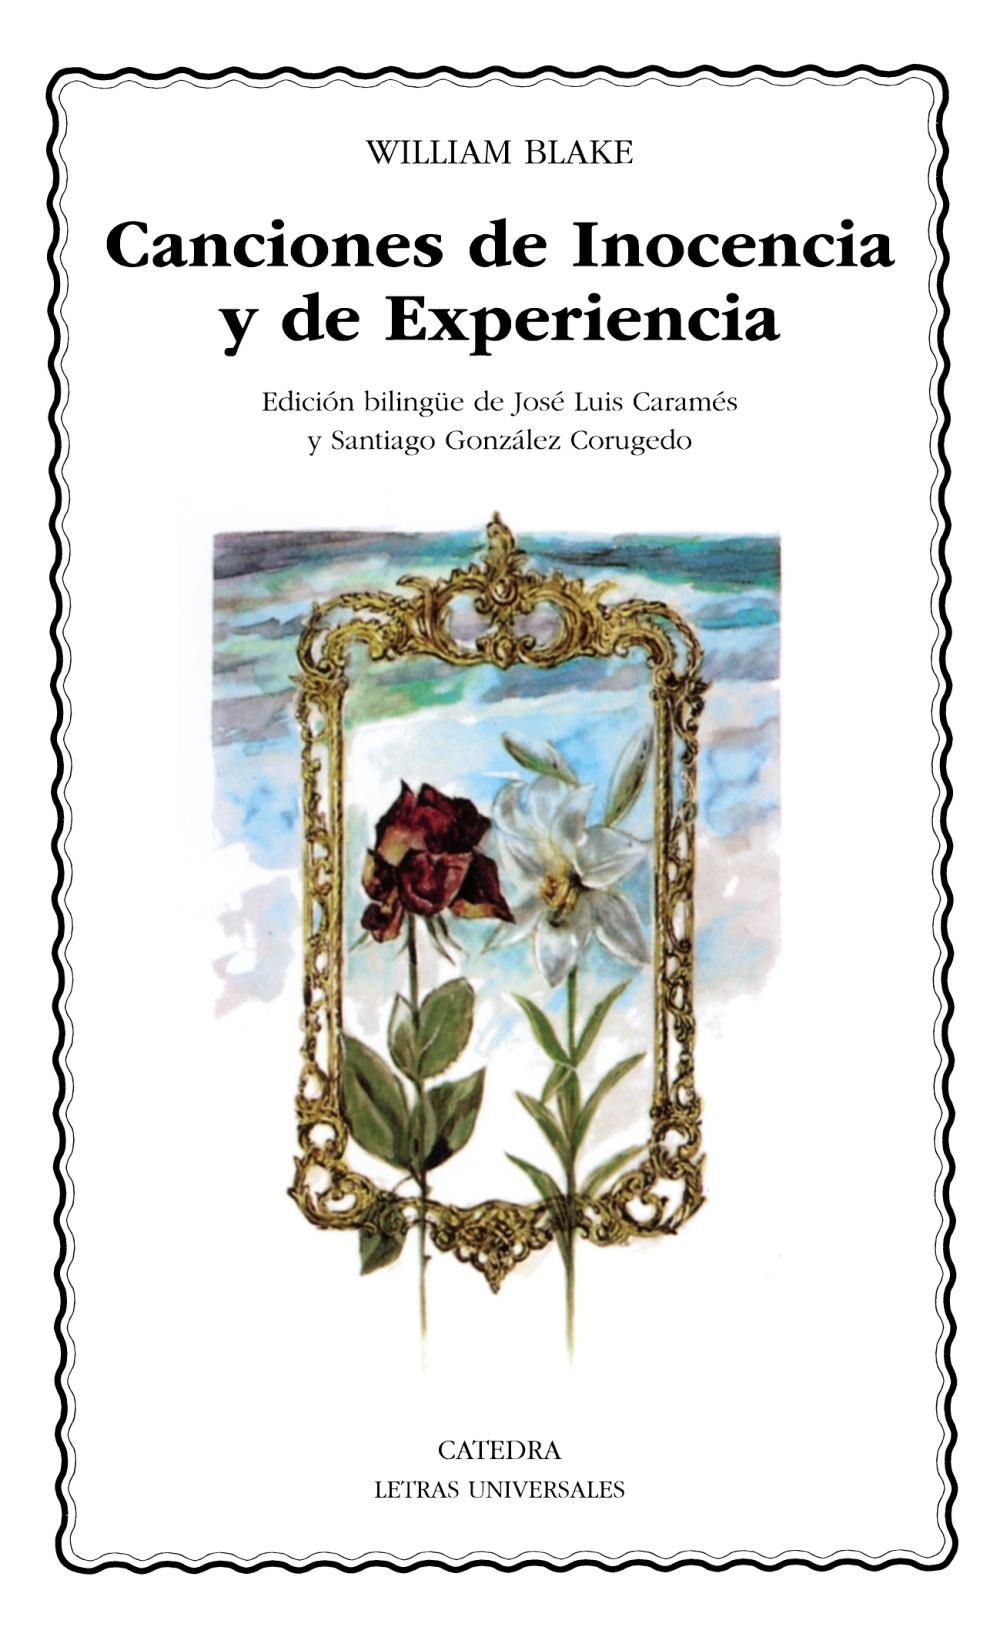 Canciones de Inocencia y de Experiencia "(Edición bilingüe)". 